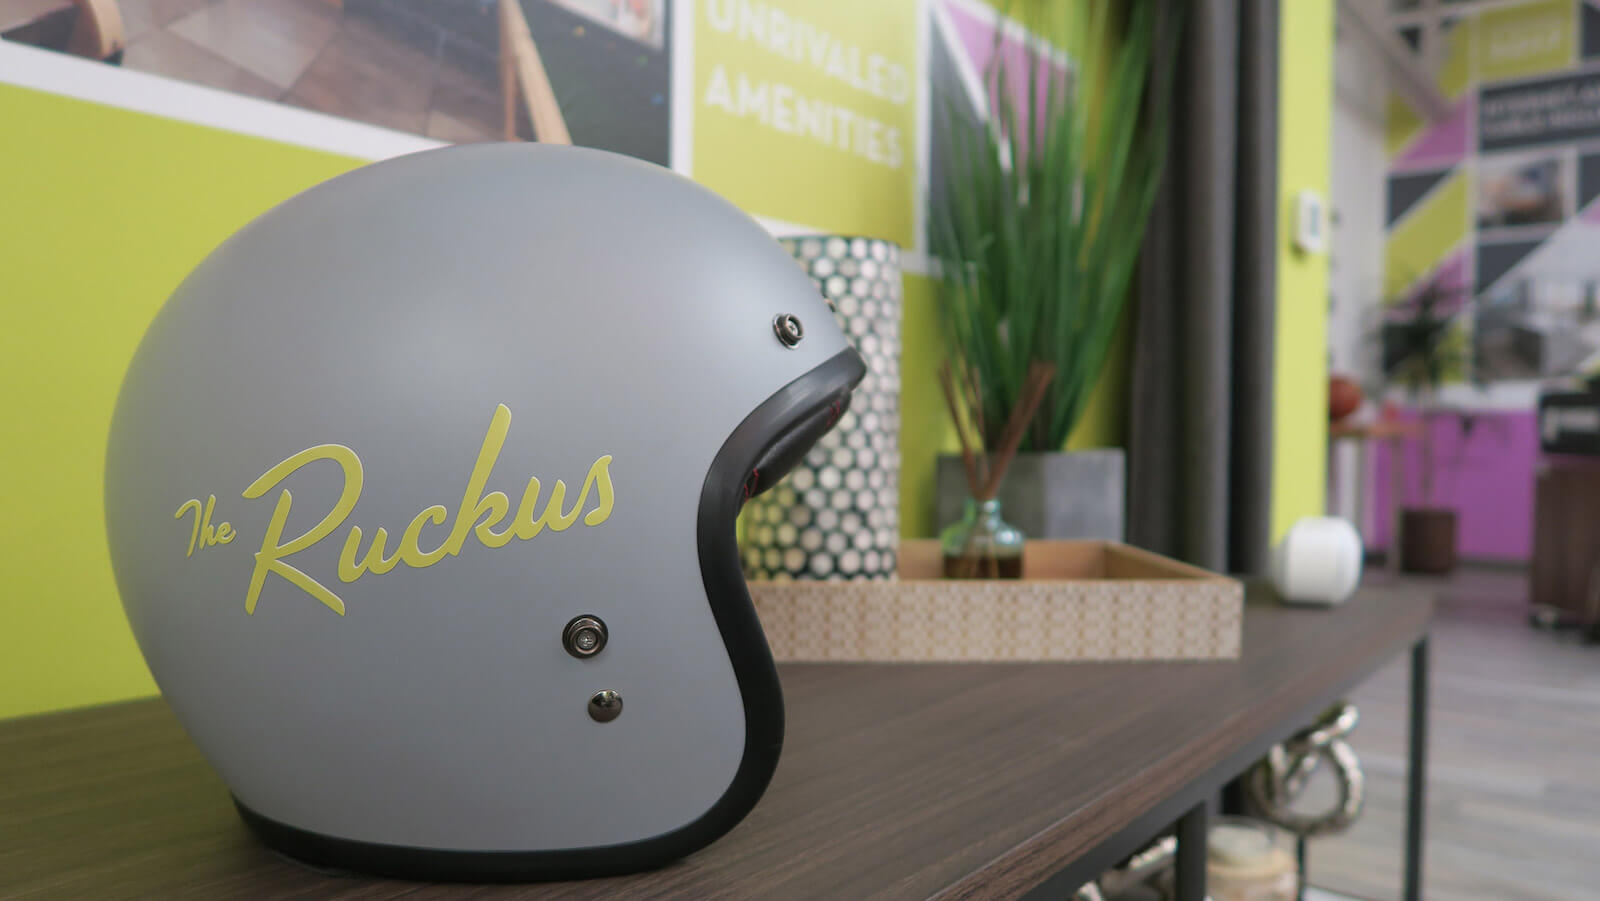 The Ruckus logo and branding on motorcycle helmet